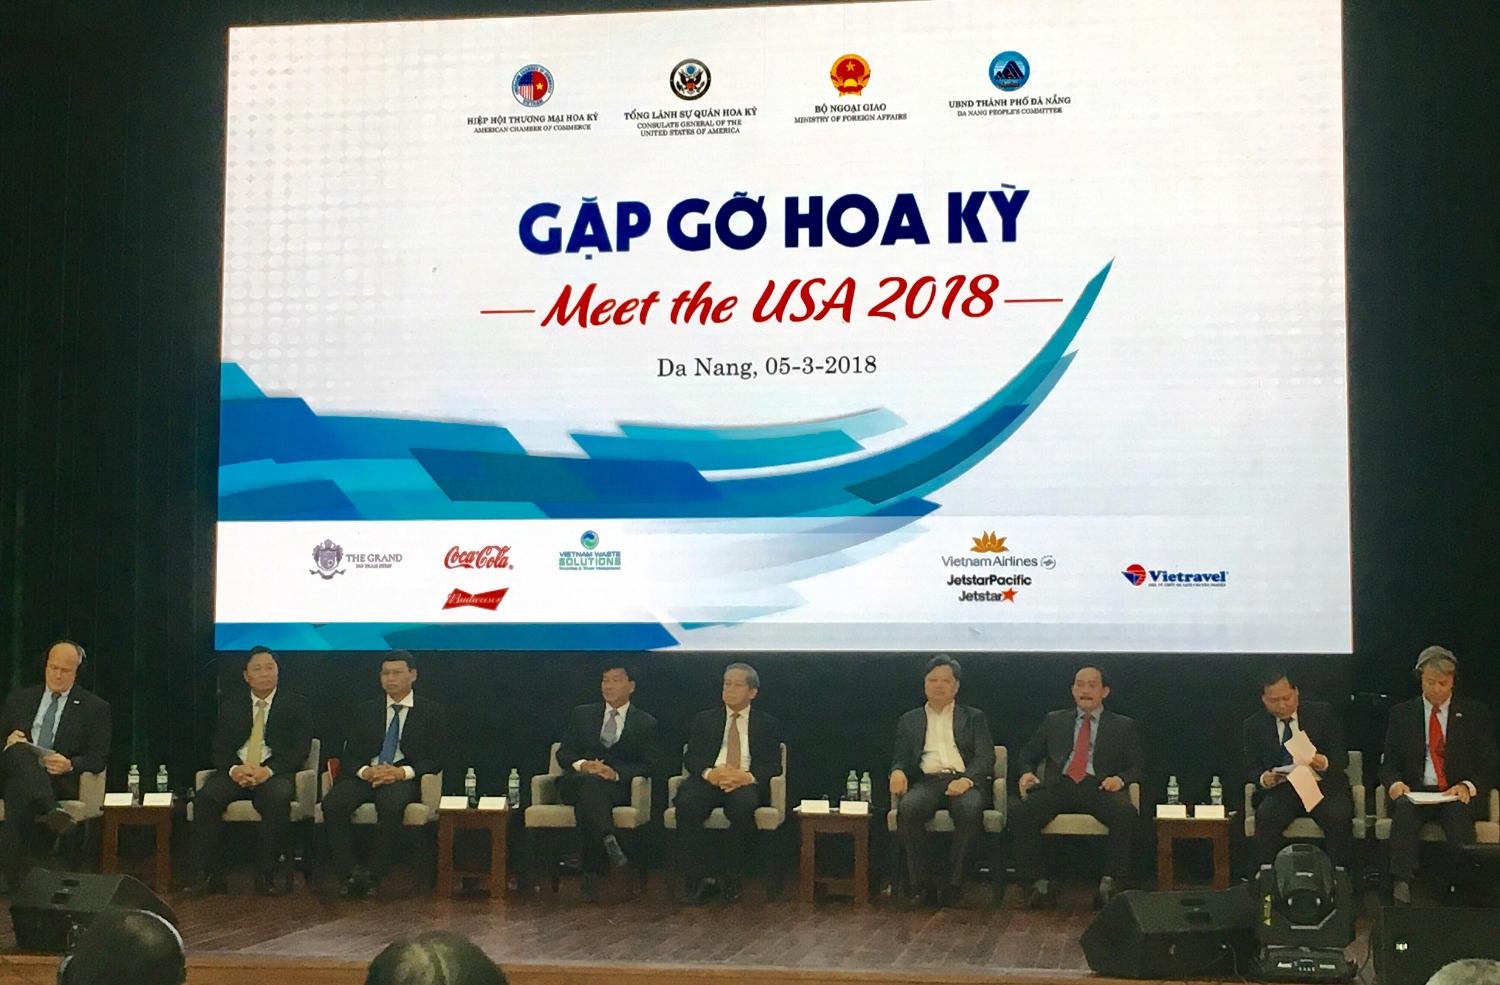 Đoàn công tác tỉnh Quảng Trị dự Hội nghị “Gặp gỡ Hoa Kỳ 2018” tại Đà Nẵng